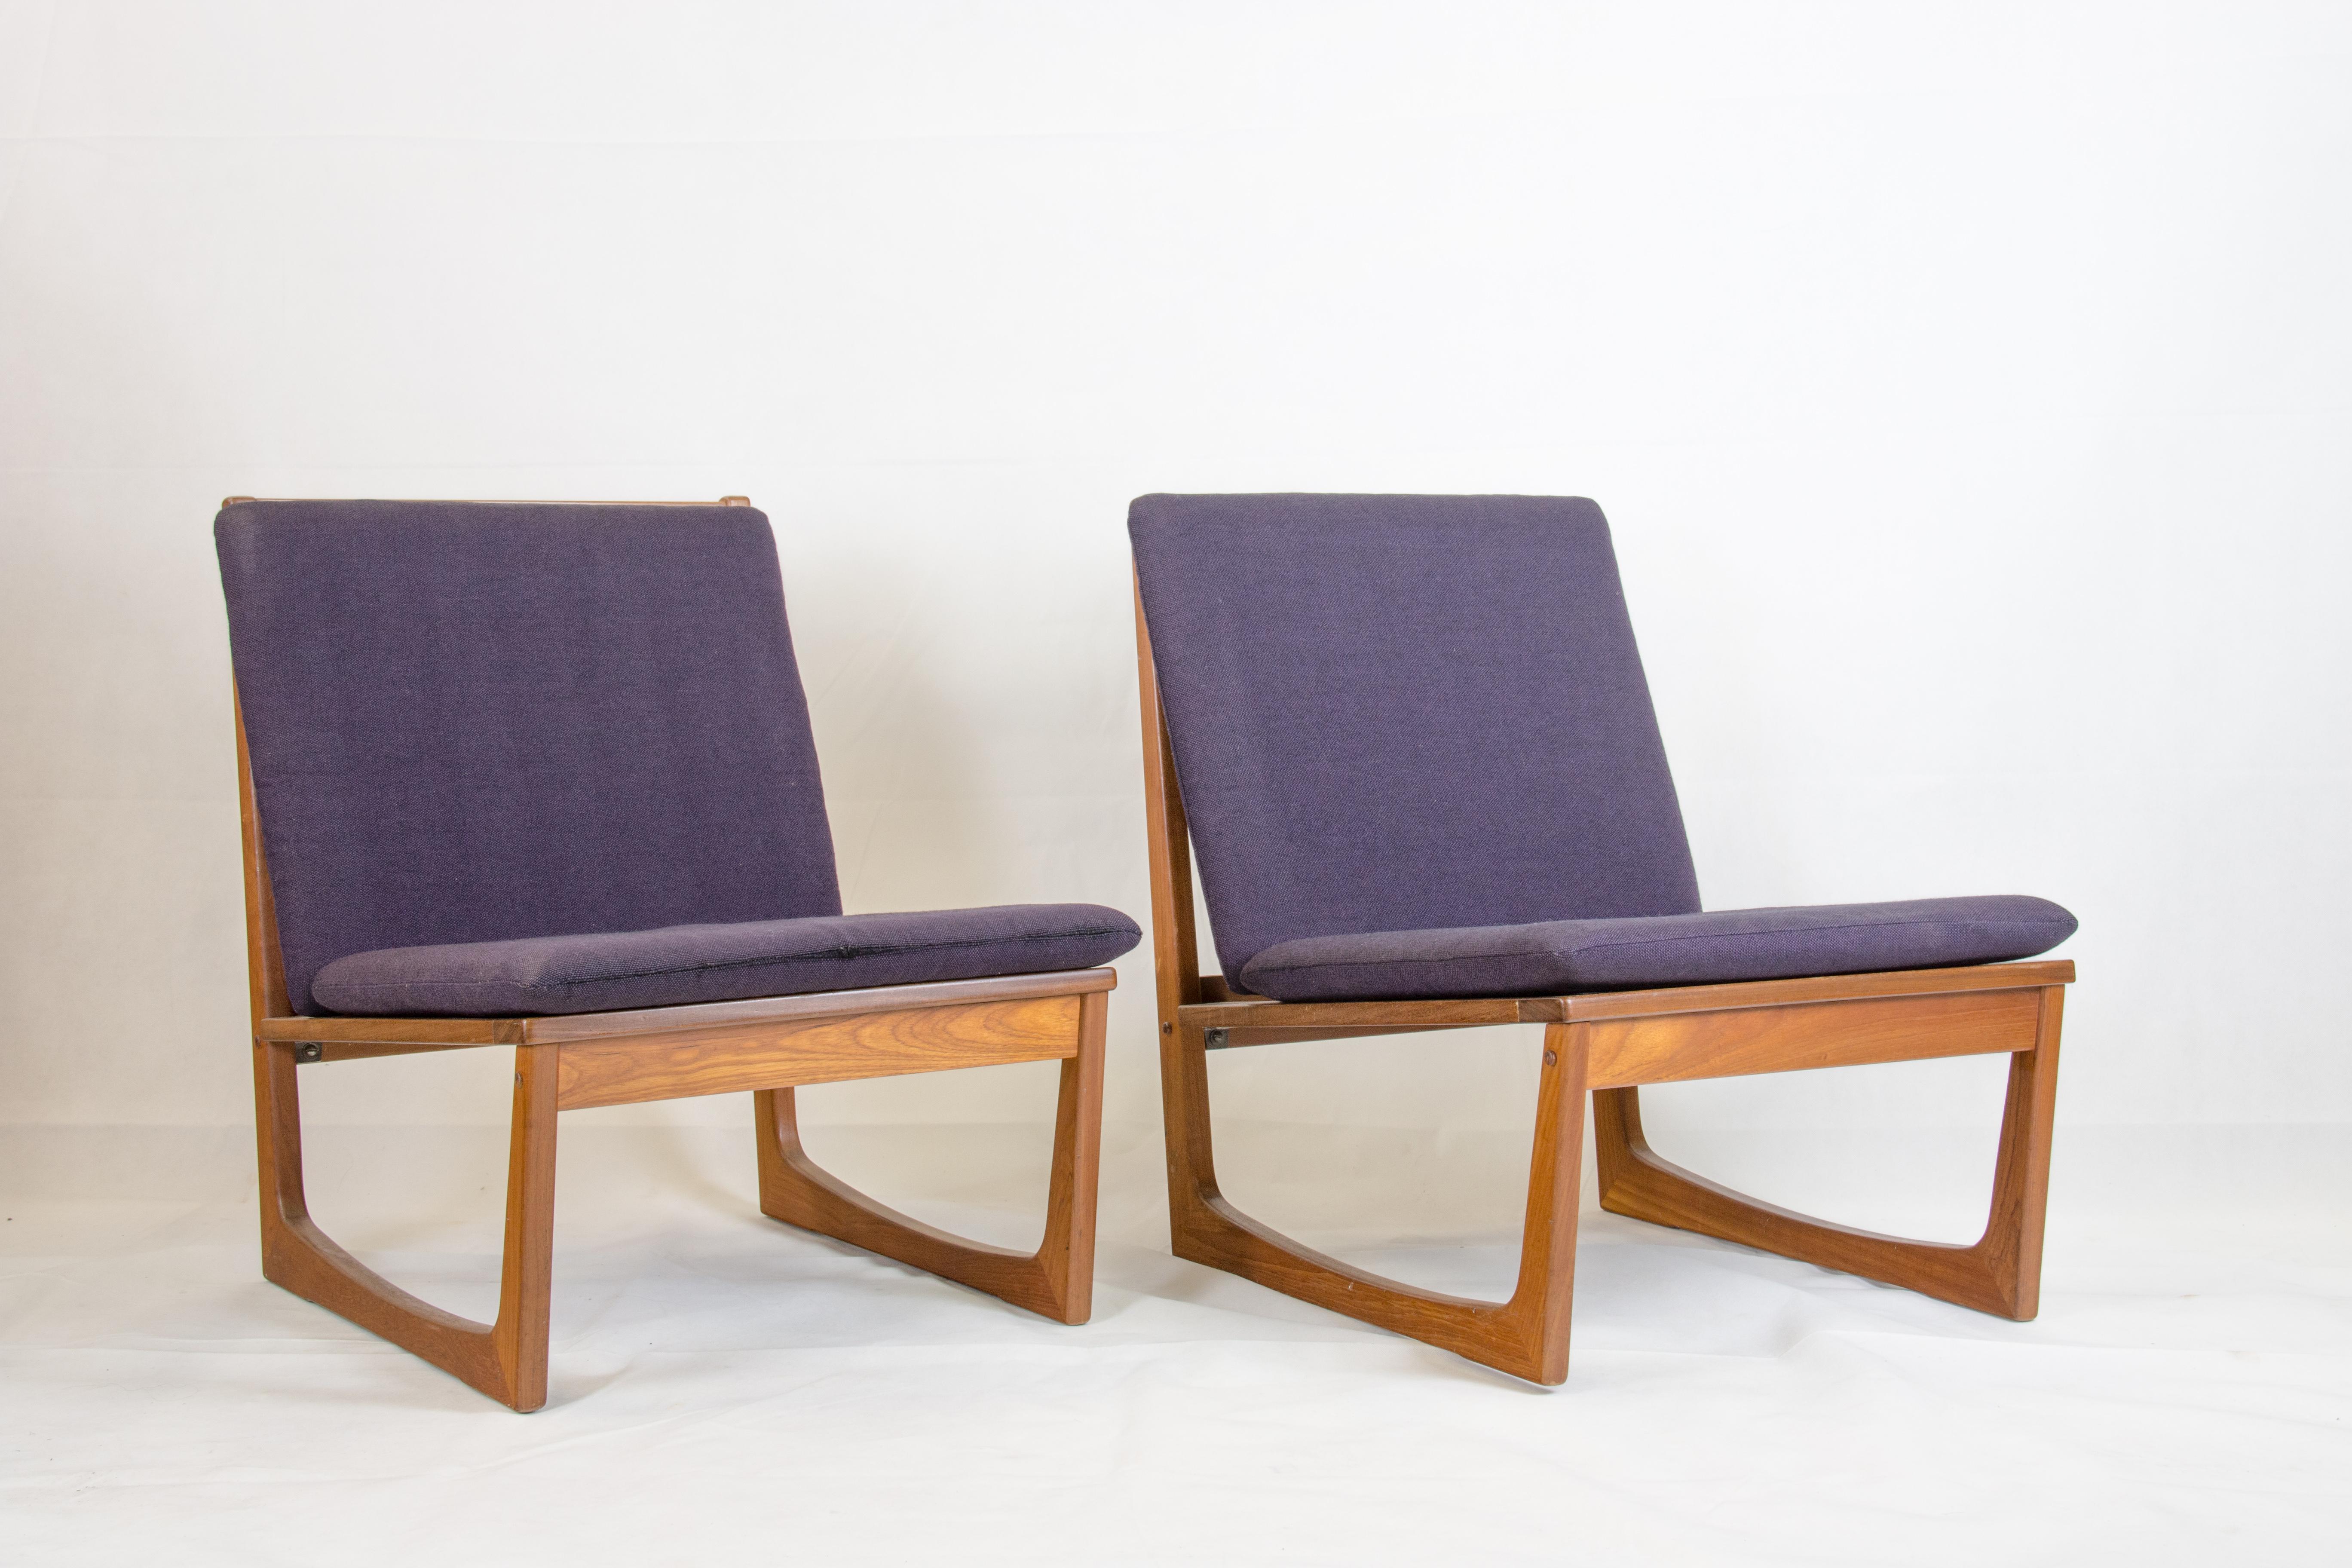 Zwei Sessel aus Teakholz, entworfen von Hans Olsen
und hergestellt von Brdr. Juul Kristensen
Original lila Wollkissen wahrscheinlich von Kvadrat